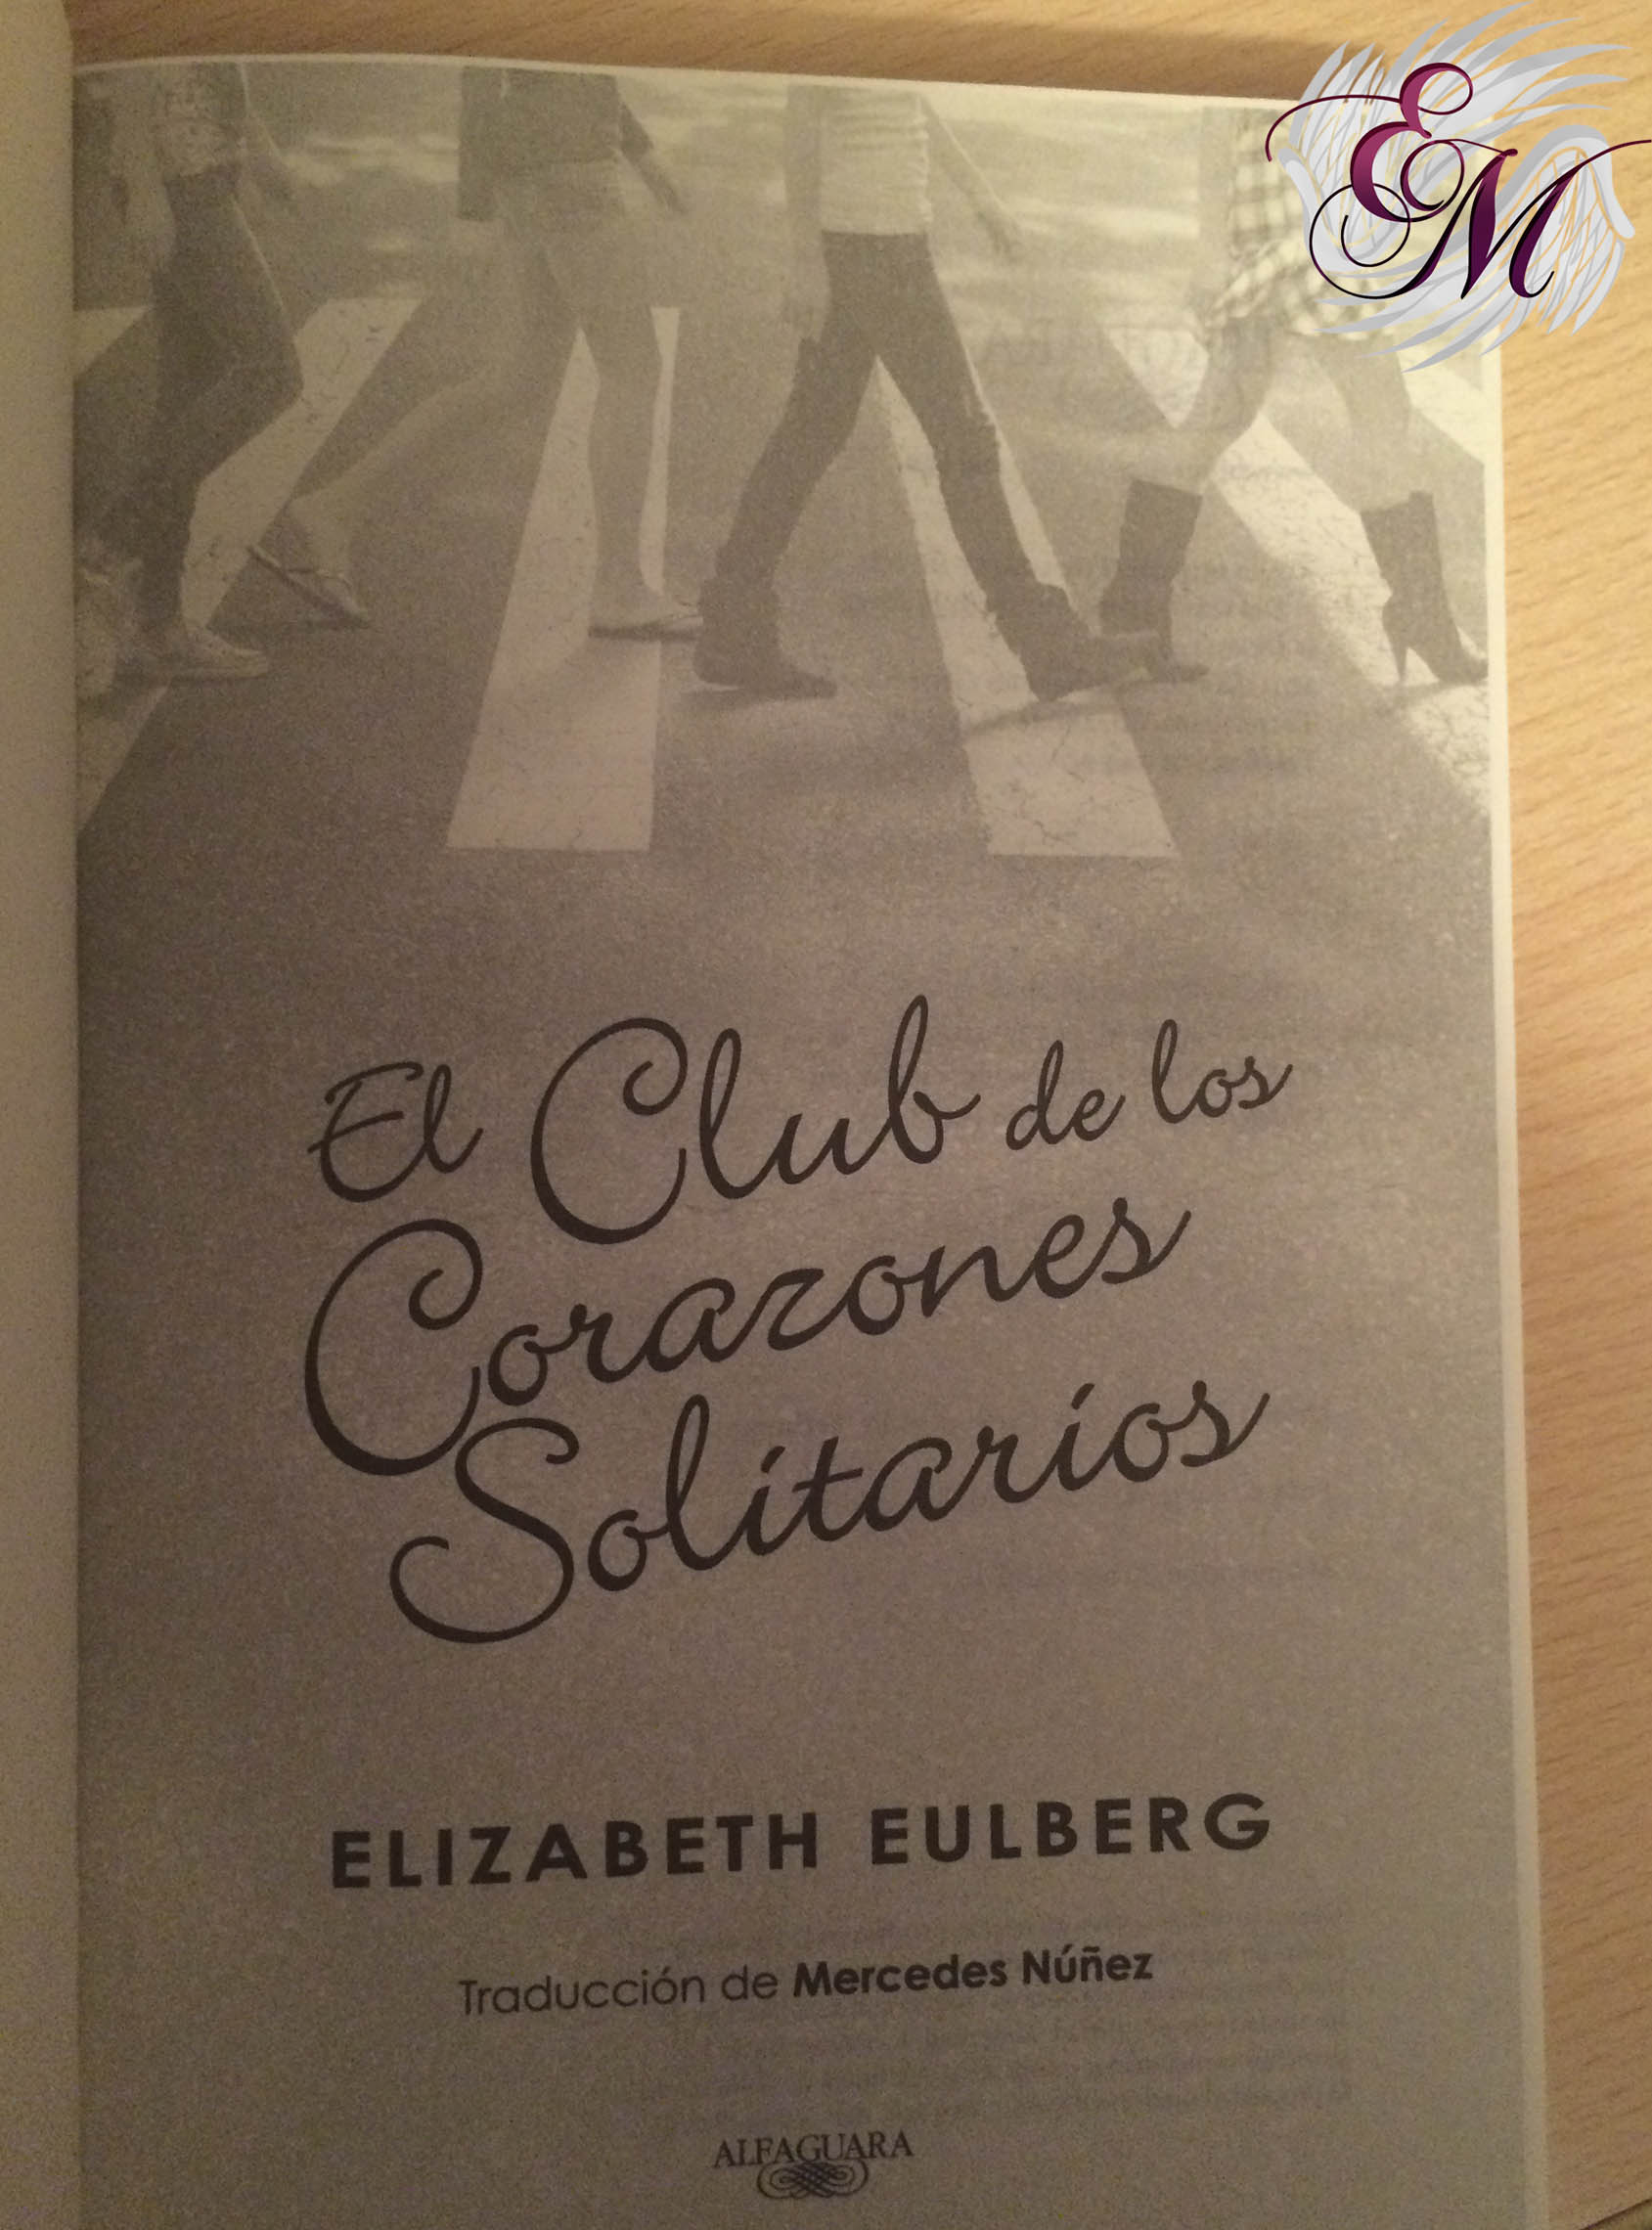 ▷ El club de los corazones solitarios (libro) - de Elizabeth Eulberg